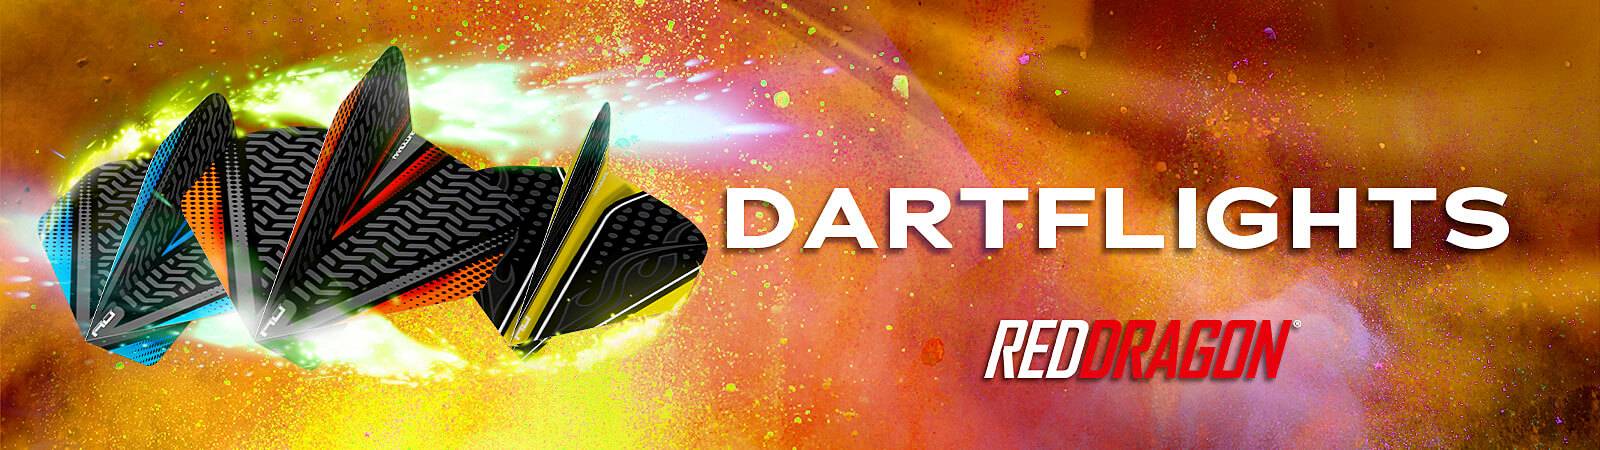 red-dragon-dartflights